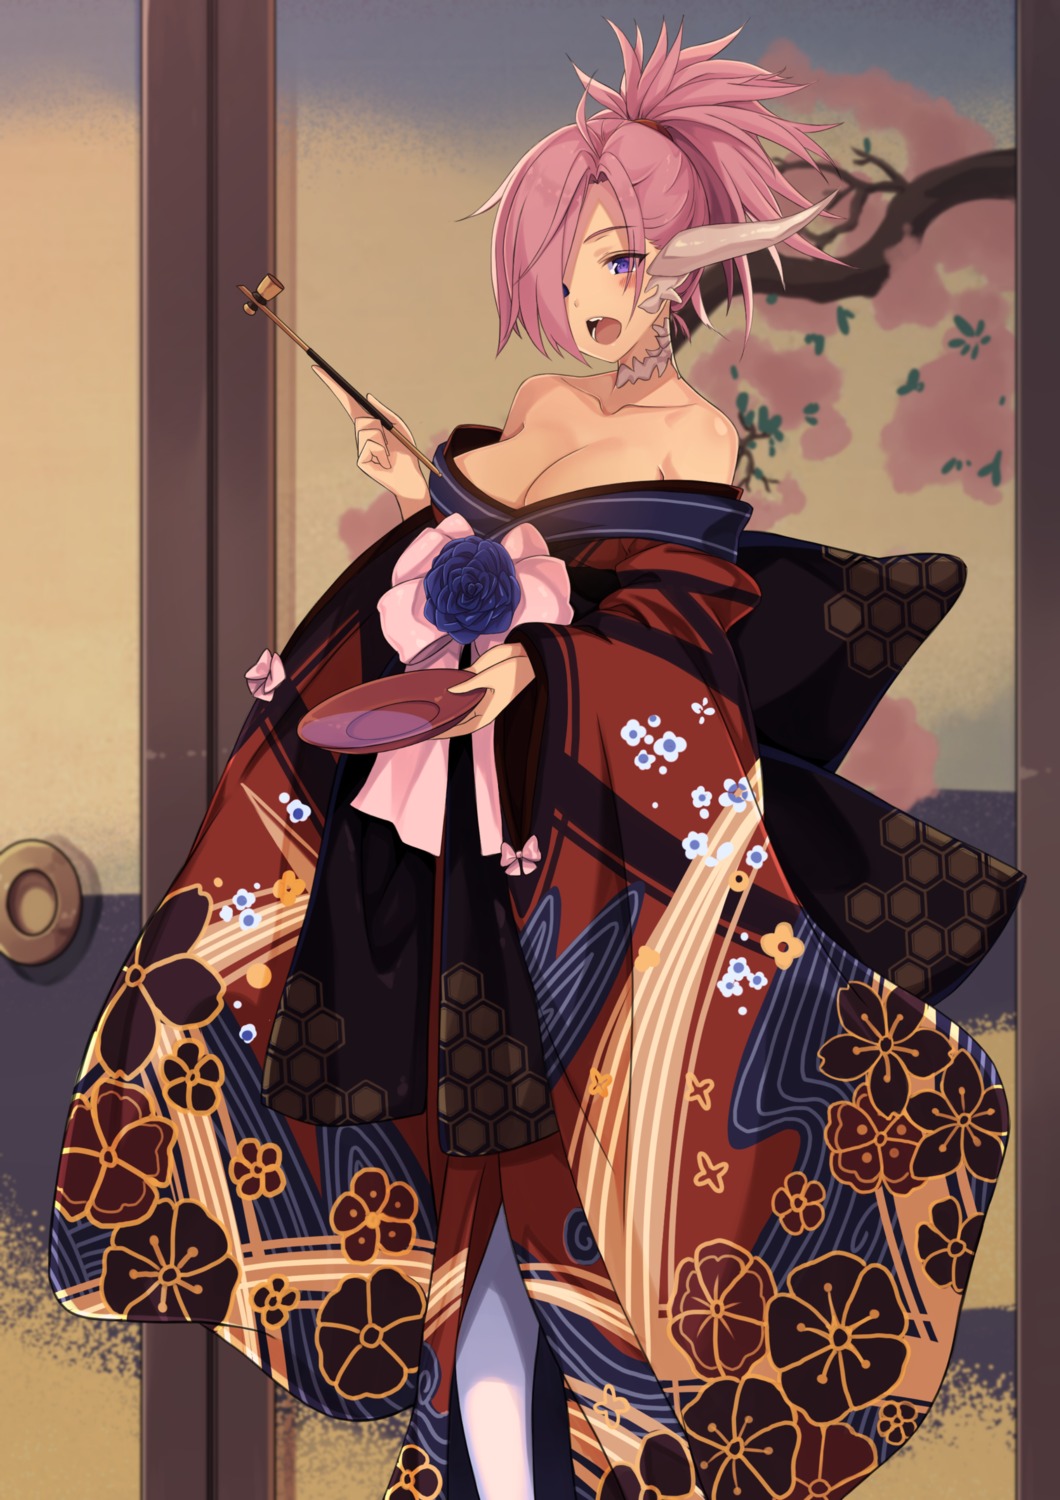 horns japanese_clothes kaosu_kun kimono no_bra open_shirt smoking